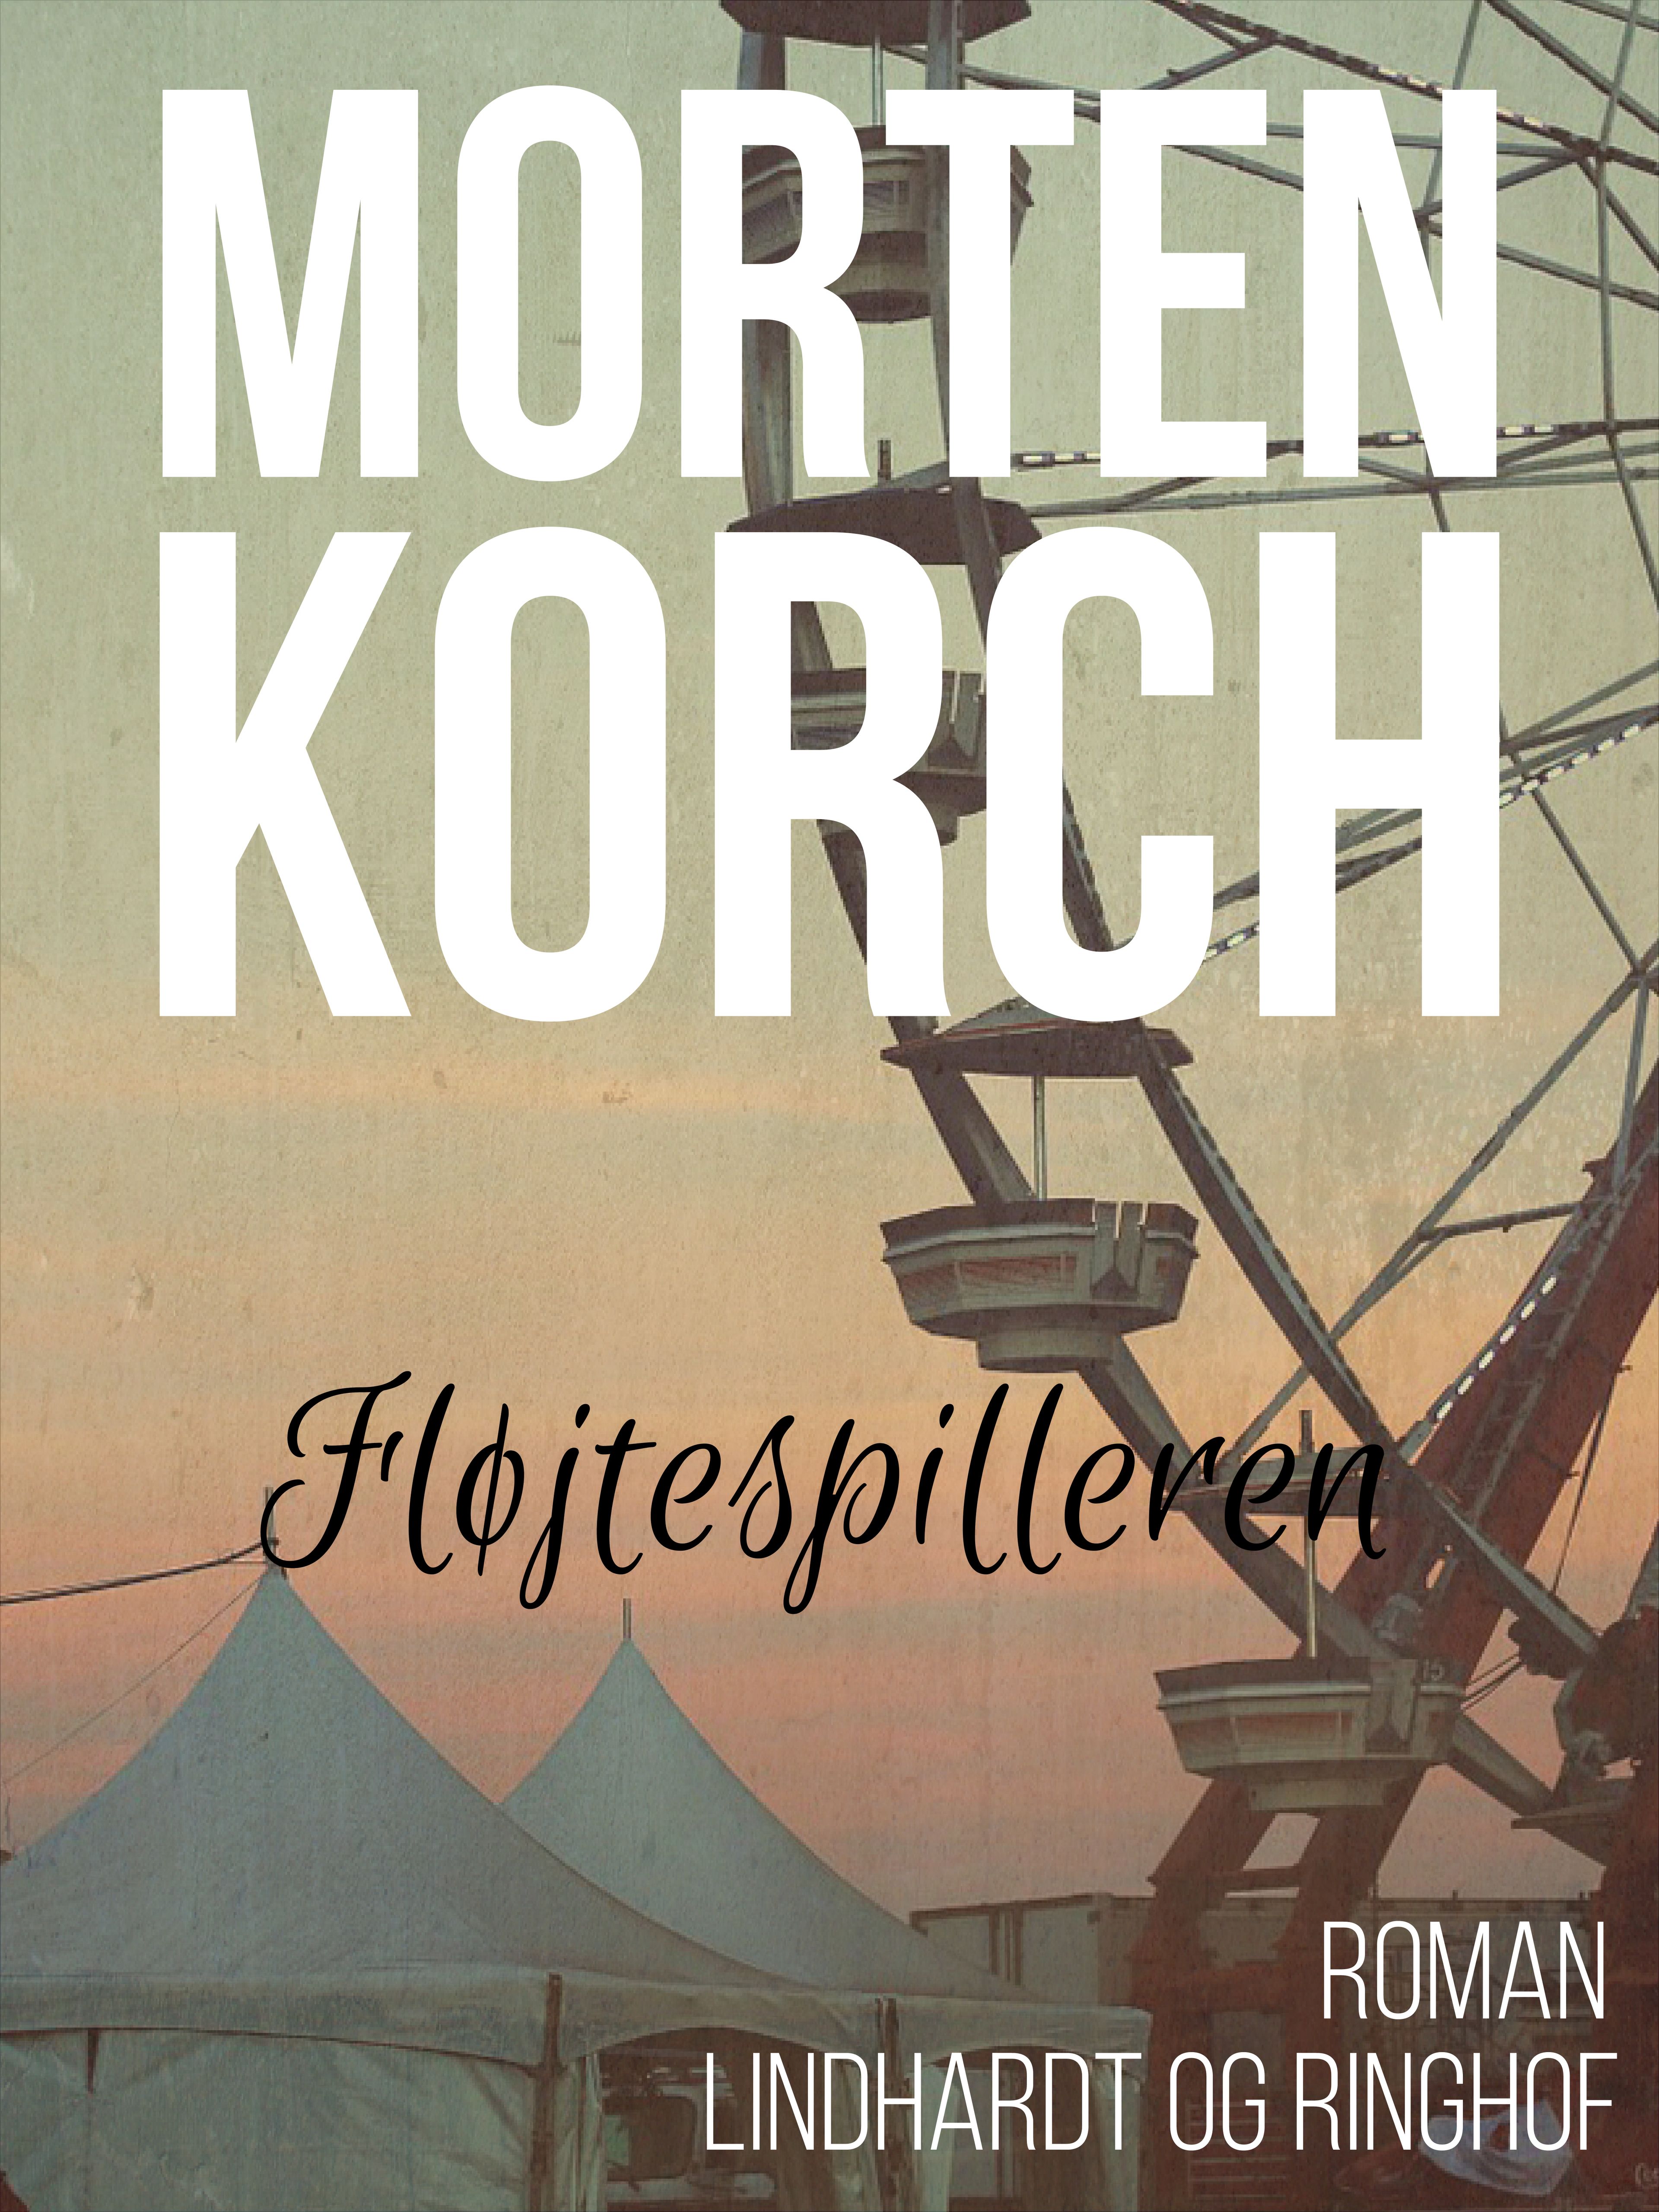 Fløjtespilleren, lydbog af Morten Korch